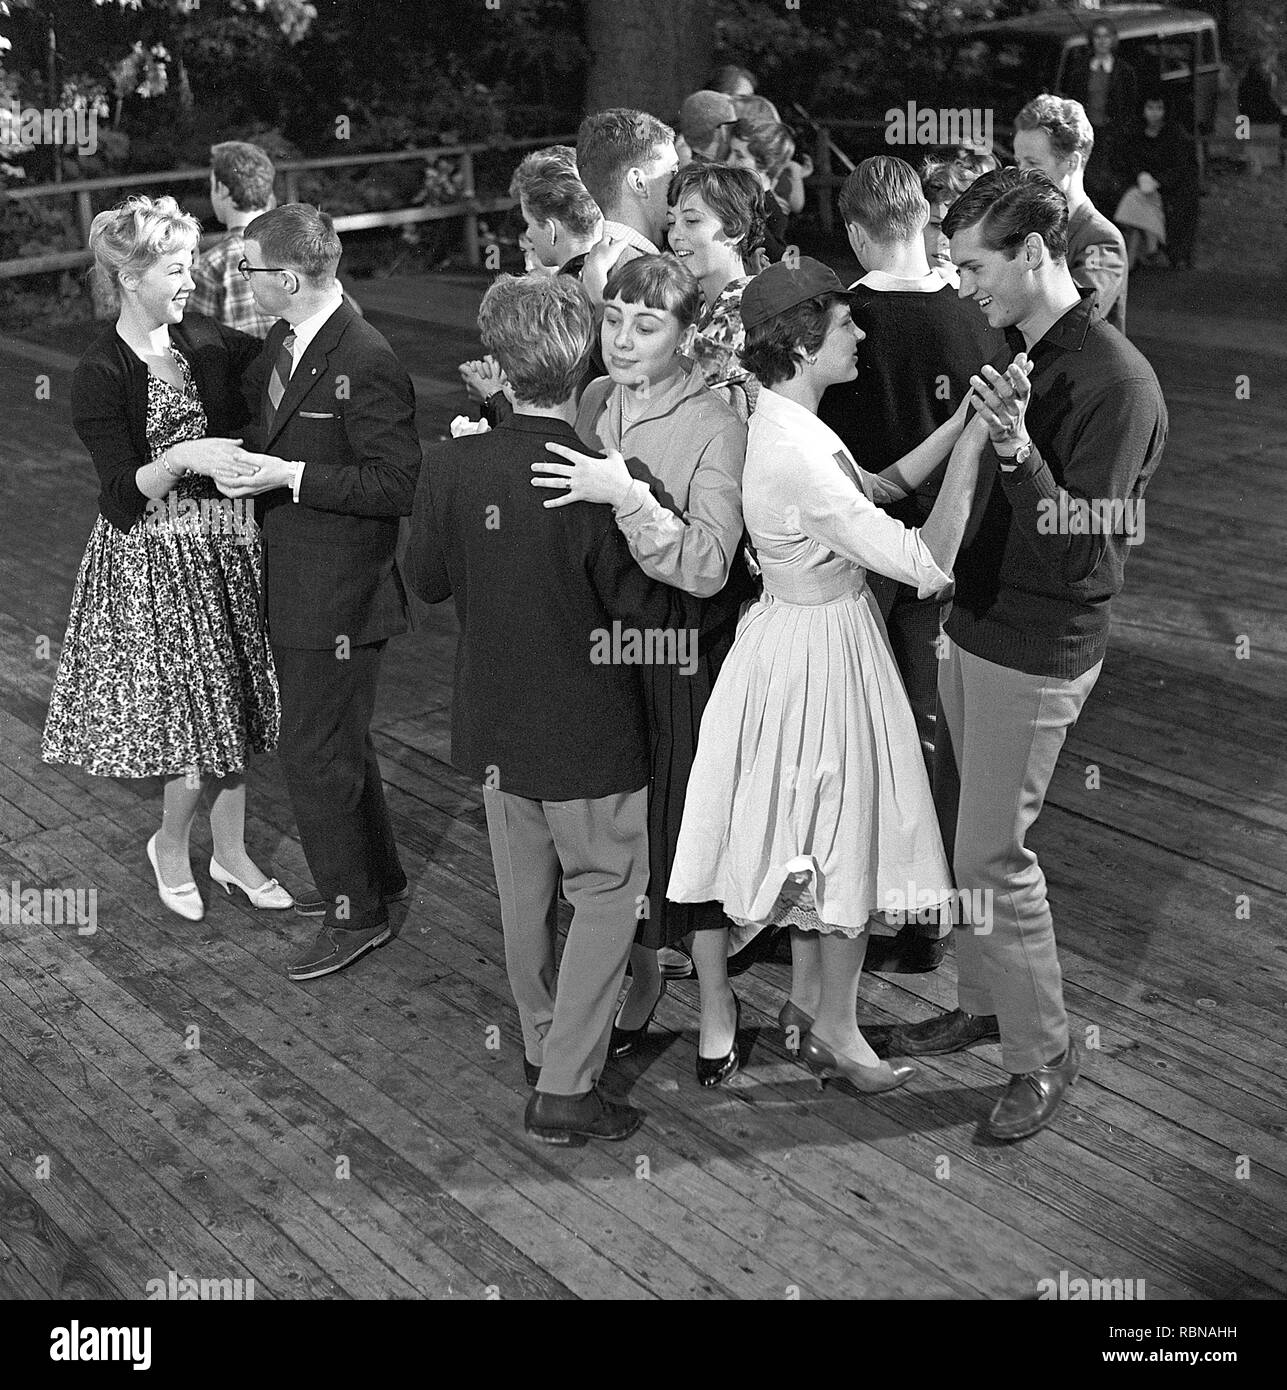 Dancing negli anni cinquanta. Un bel dehor estivo evento di ballo dove le giovani coppie sono ballare e divertirsi. La Svezia 1958 Foto Stock